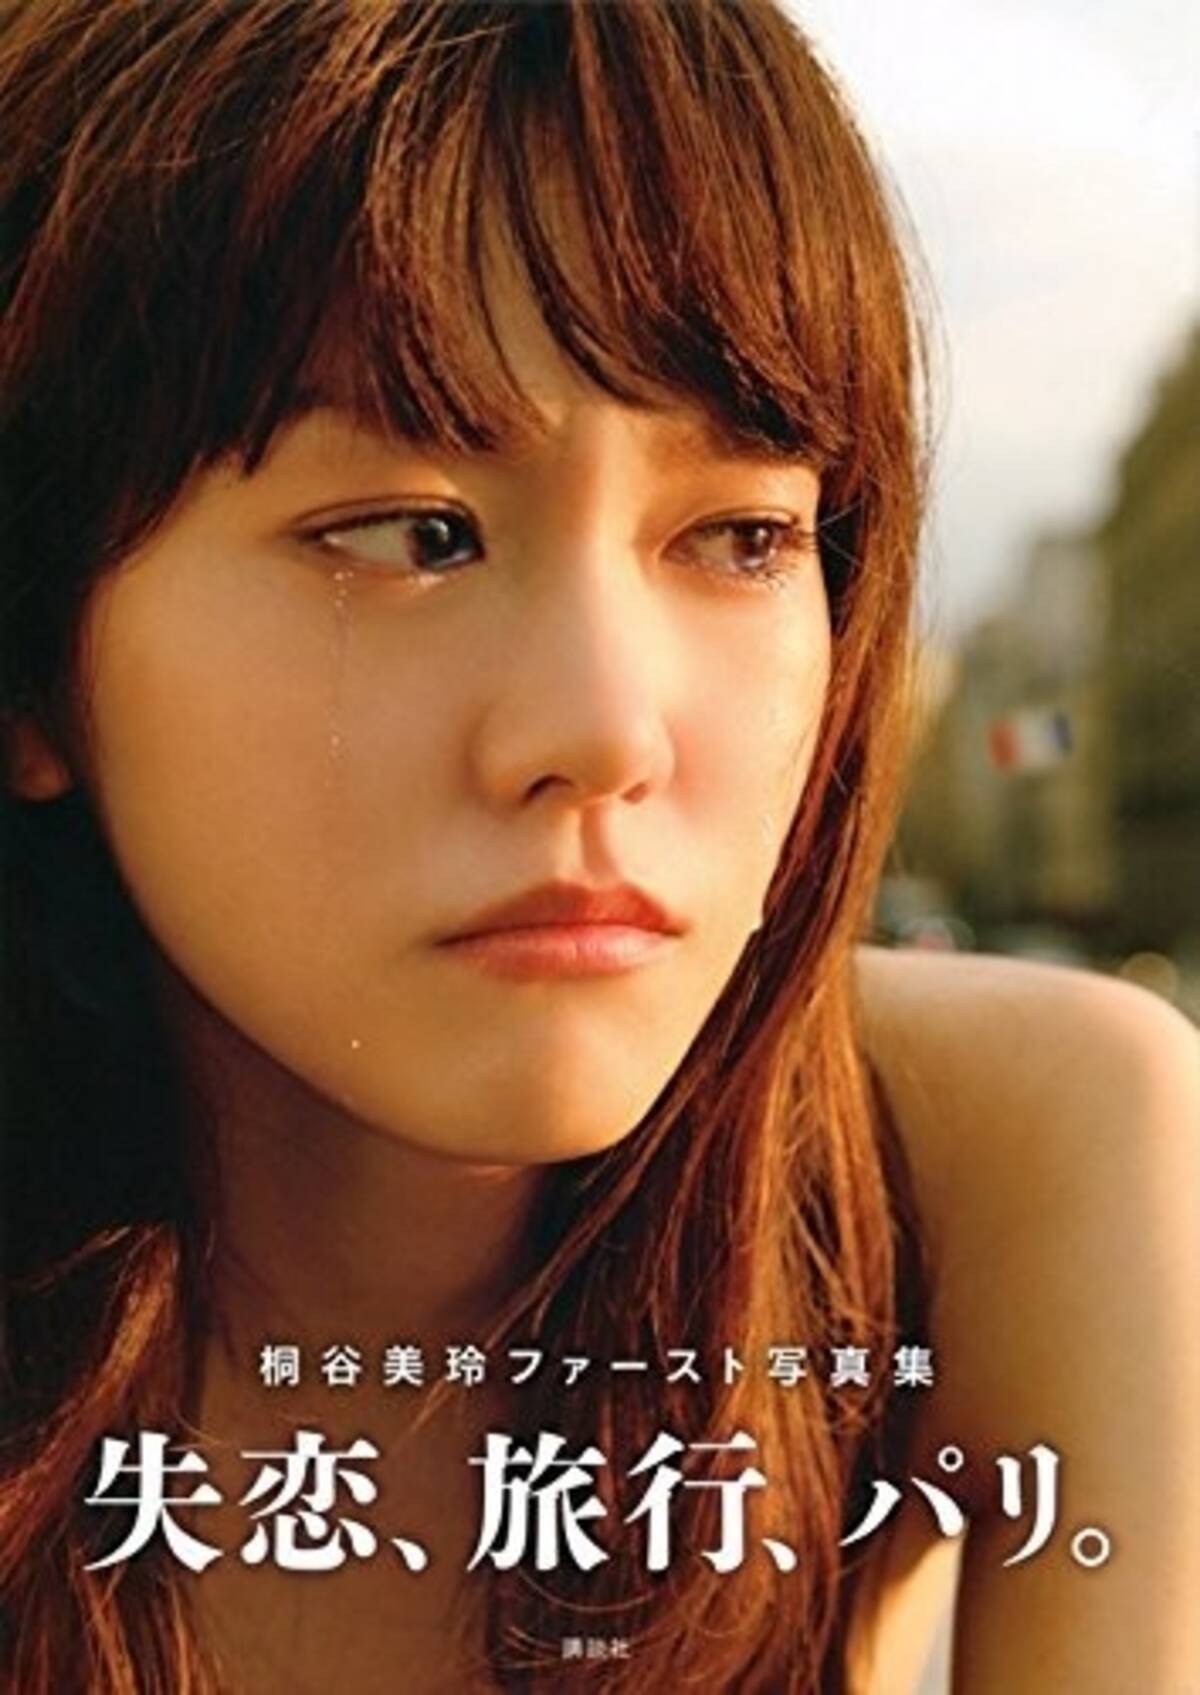 やせ過ぎで肌荒れも 月9主演 の桐谷美玲に不安材料 16年7月日 エキサイトニュース 2 2